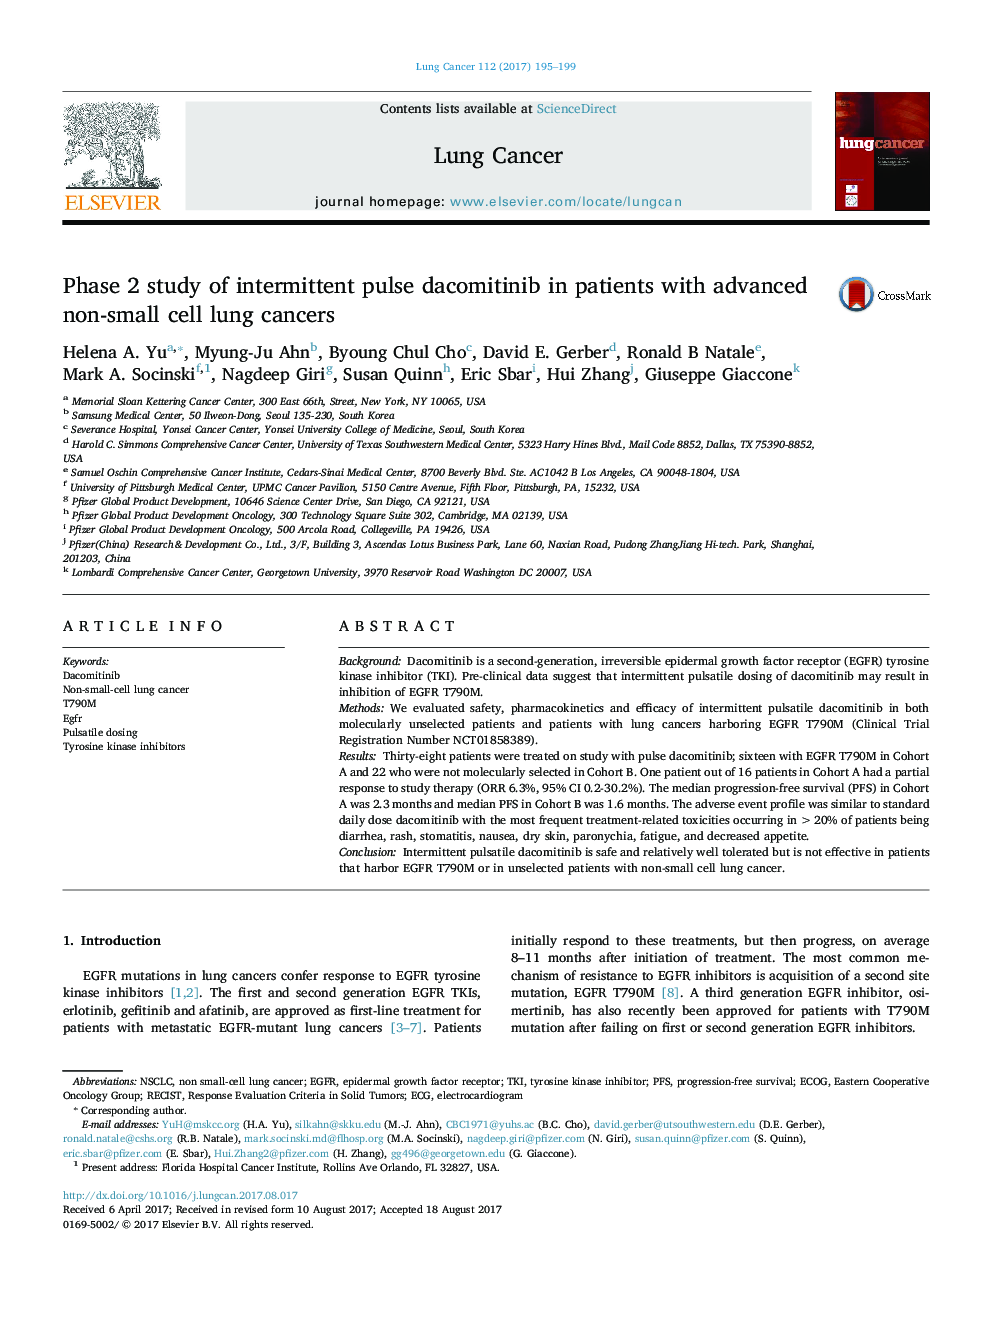 مطالعه فاز 2 داکومیتینیب پالس متناوب در بیماران مبتلا به سرطان های ریه غیر سلولی پیشرفته 